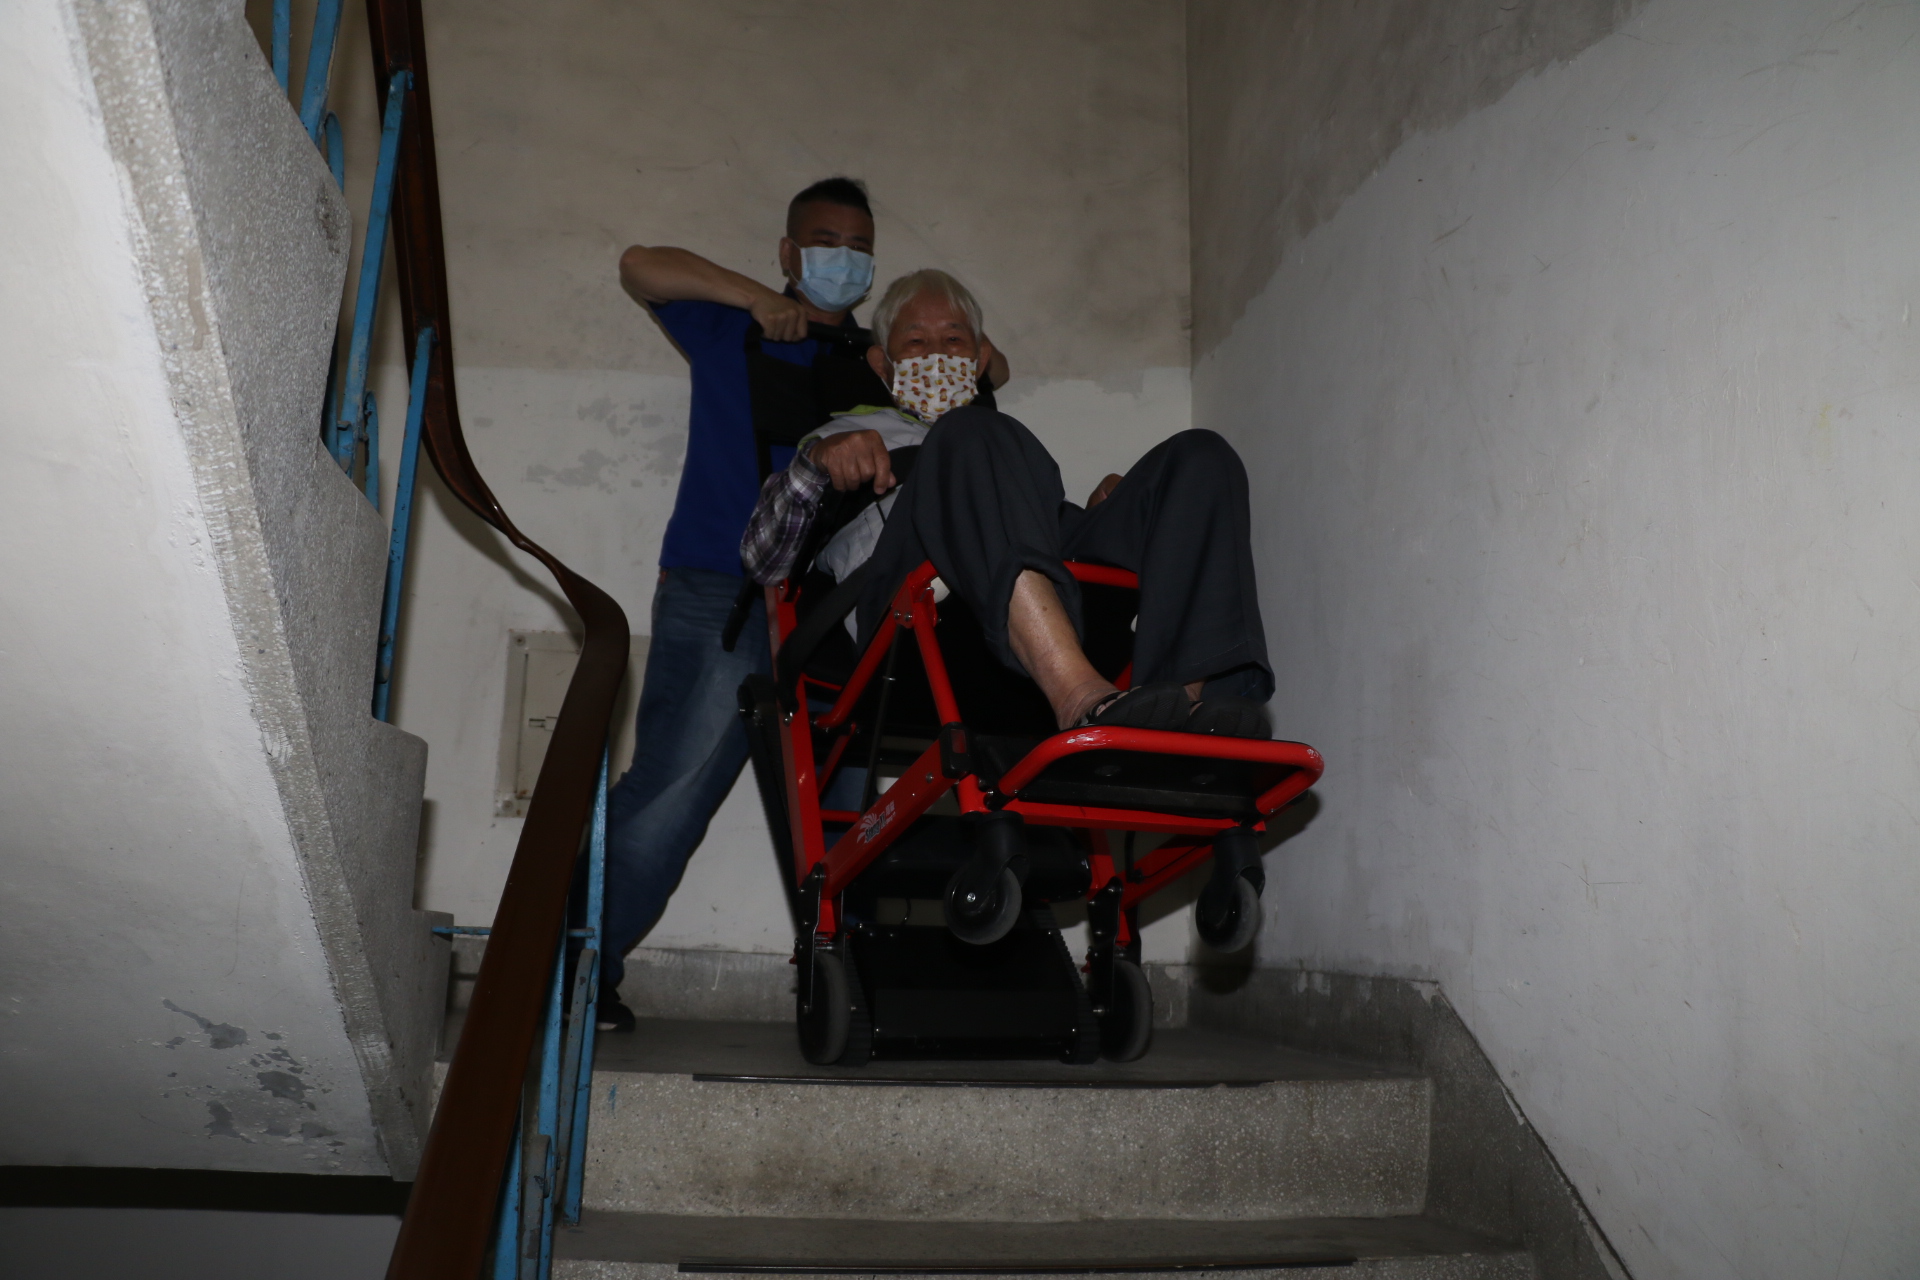 住在新莊昌明街老舊公寓4樓的黃爸爸  已多次使用「爬梯巴士Party-BUS」就醫和復健  藉由爬梯機上下樓